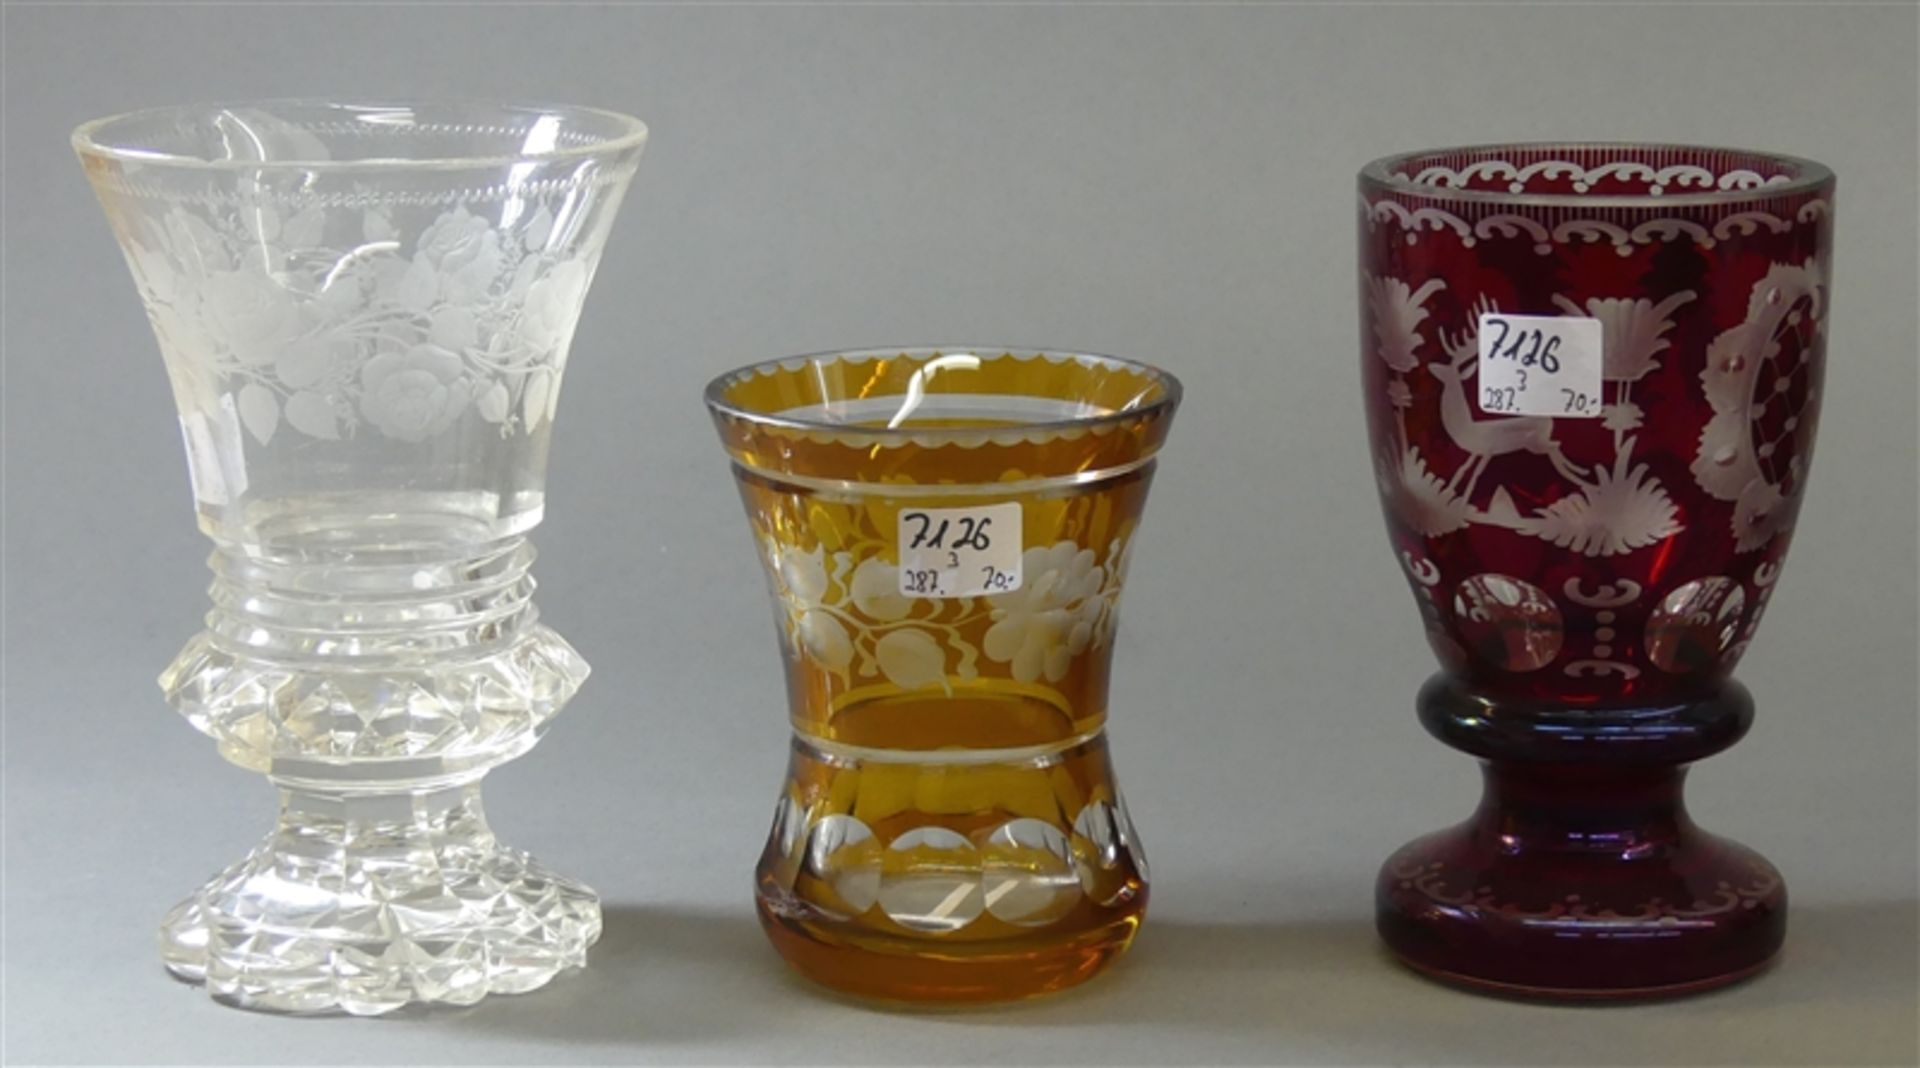 Konvolut3 Pokale, Kristallglas, 1 x rubinrot, 1 x amber, 1 x klar, geschliffen, verschieden,